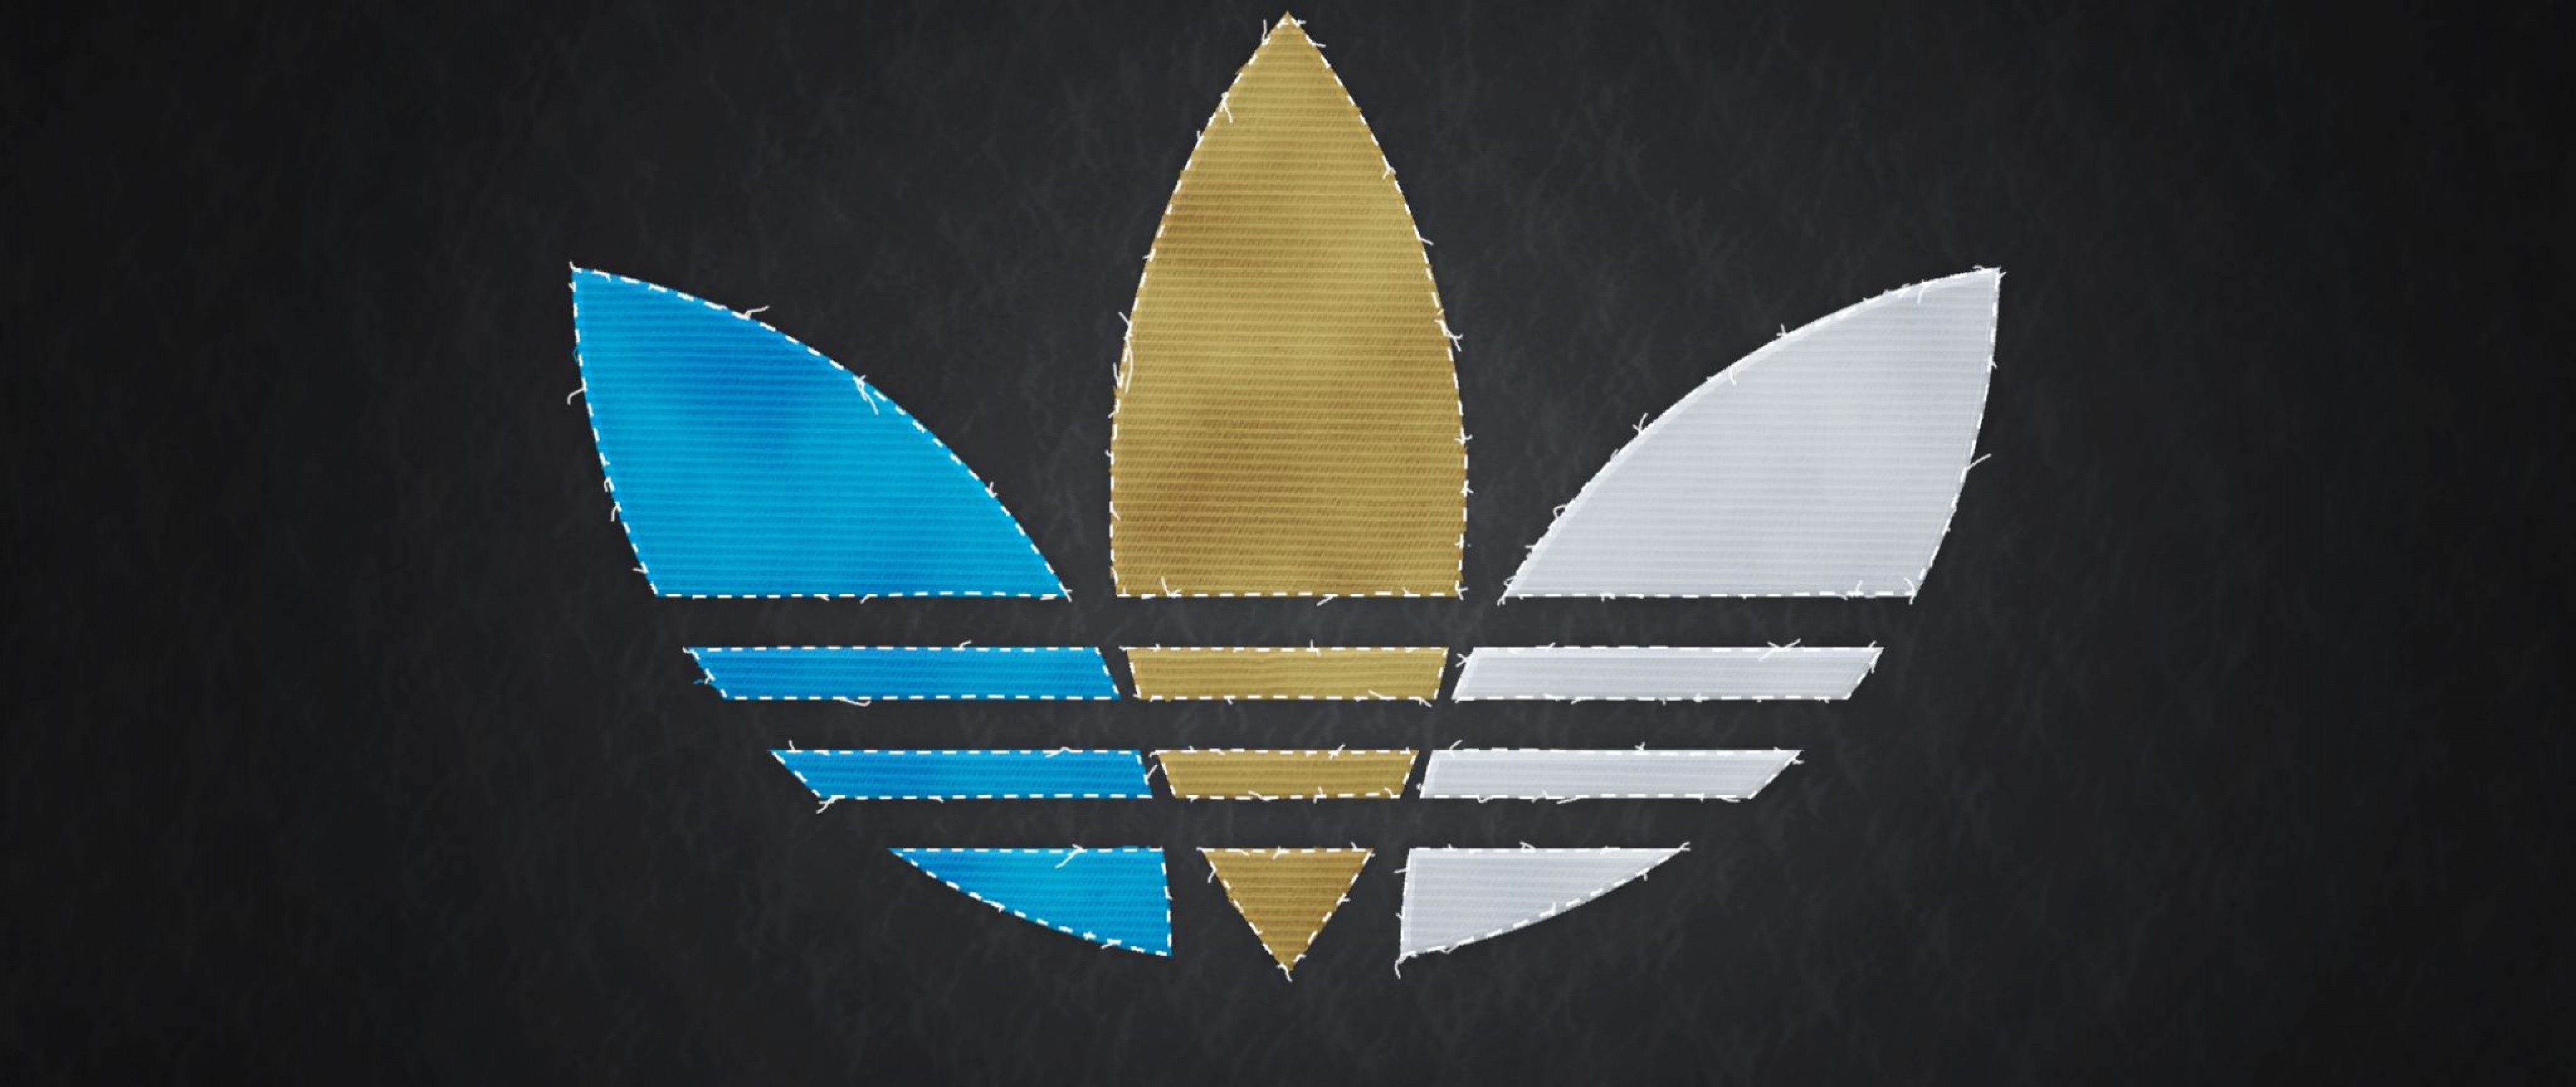 текстуры логотип adidas бесплатно